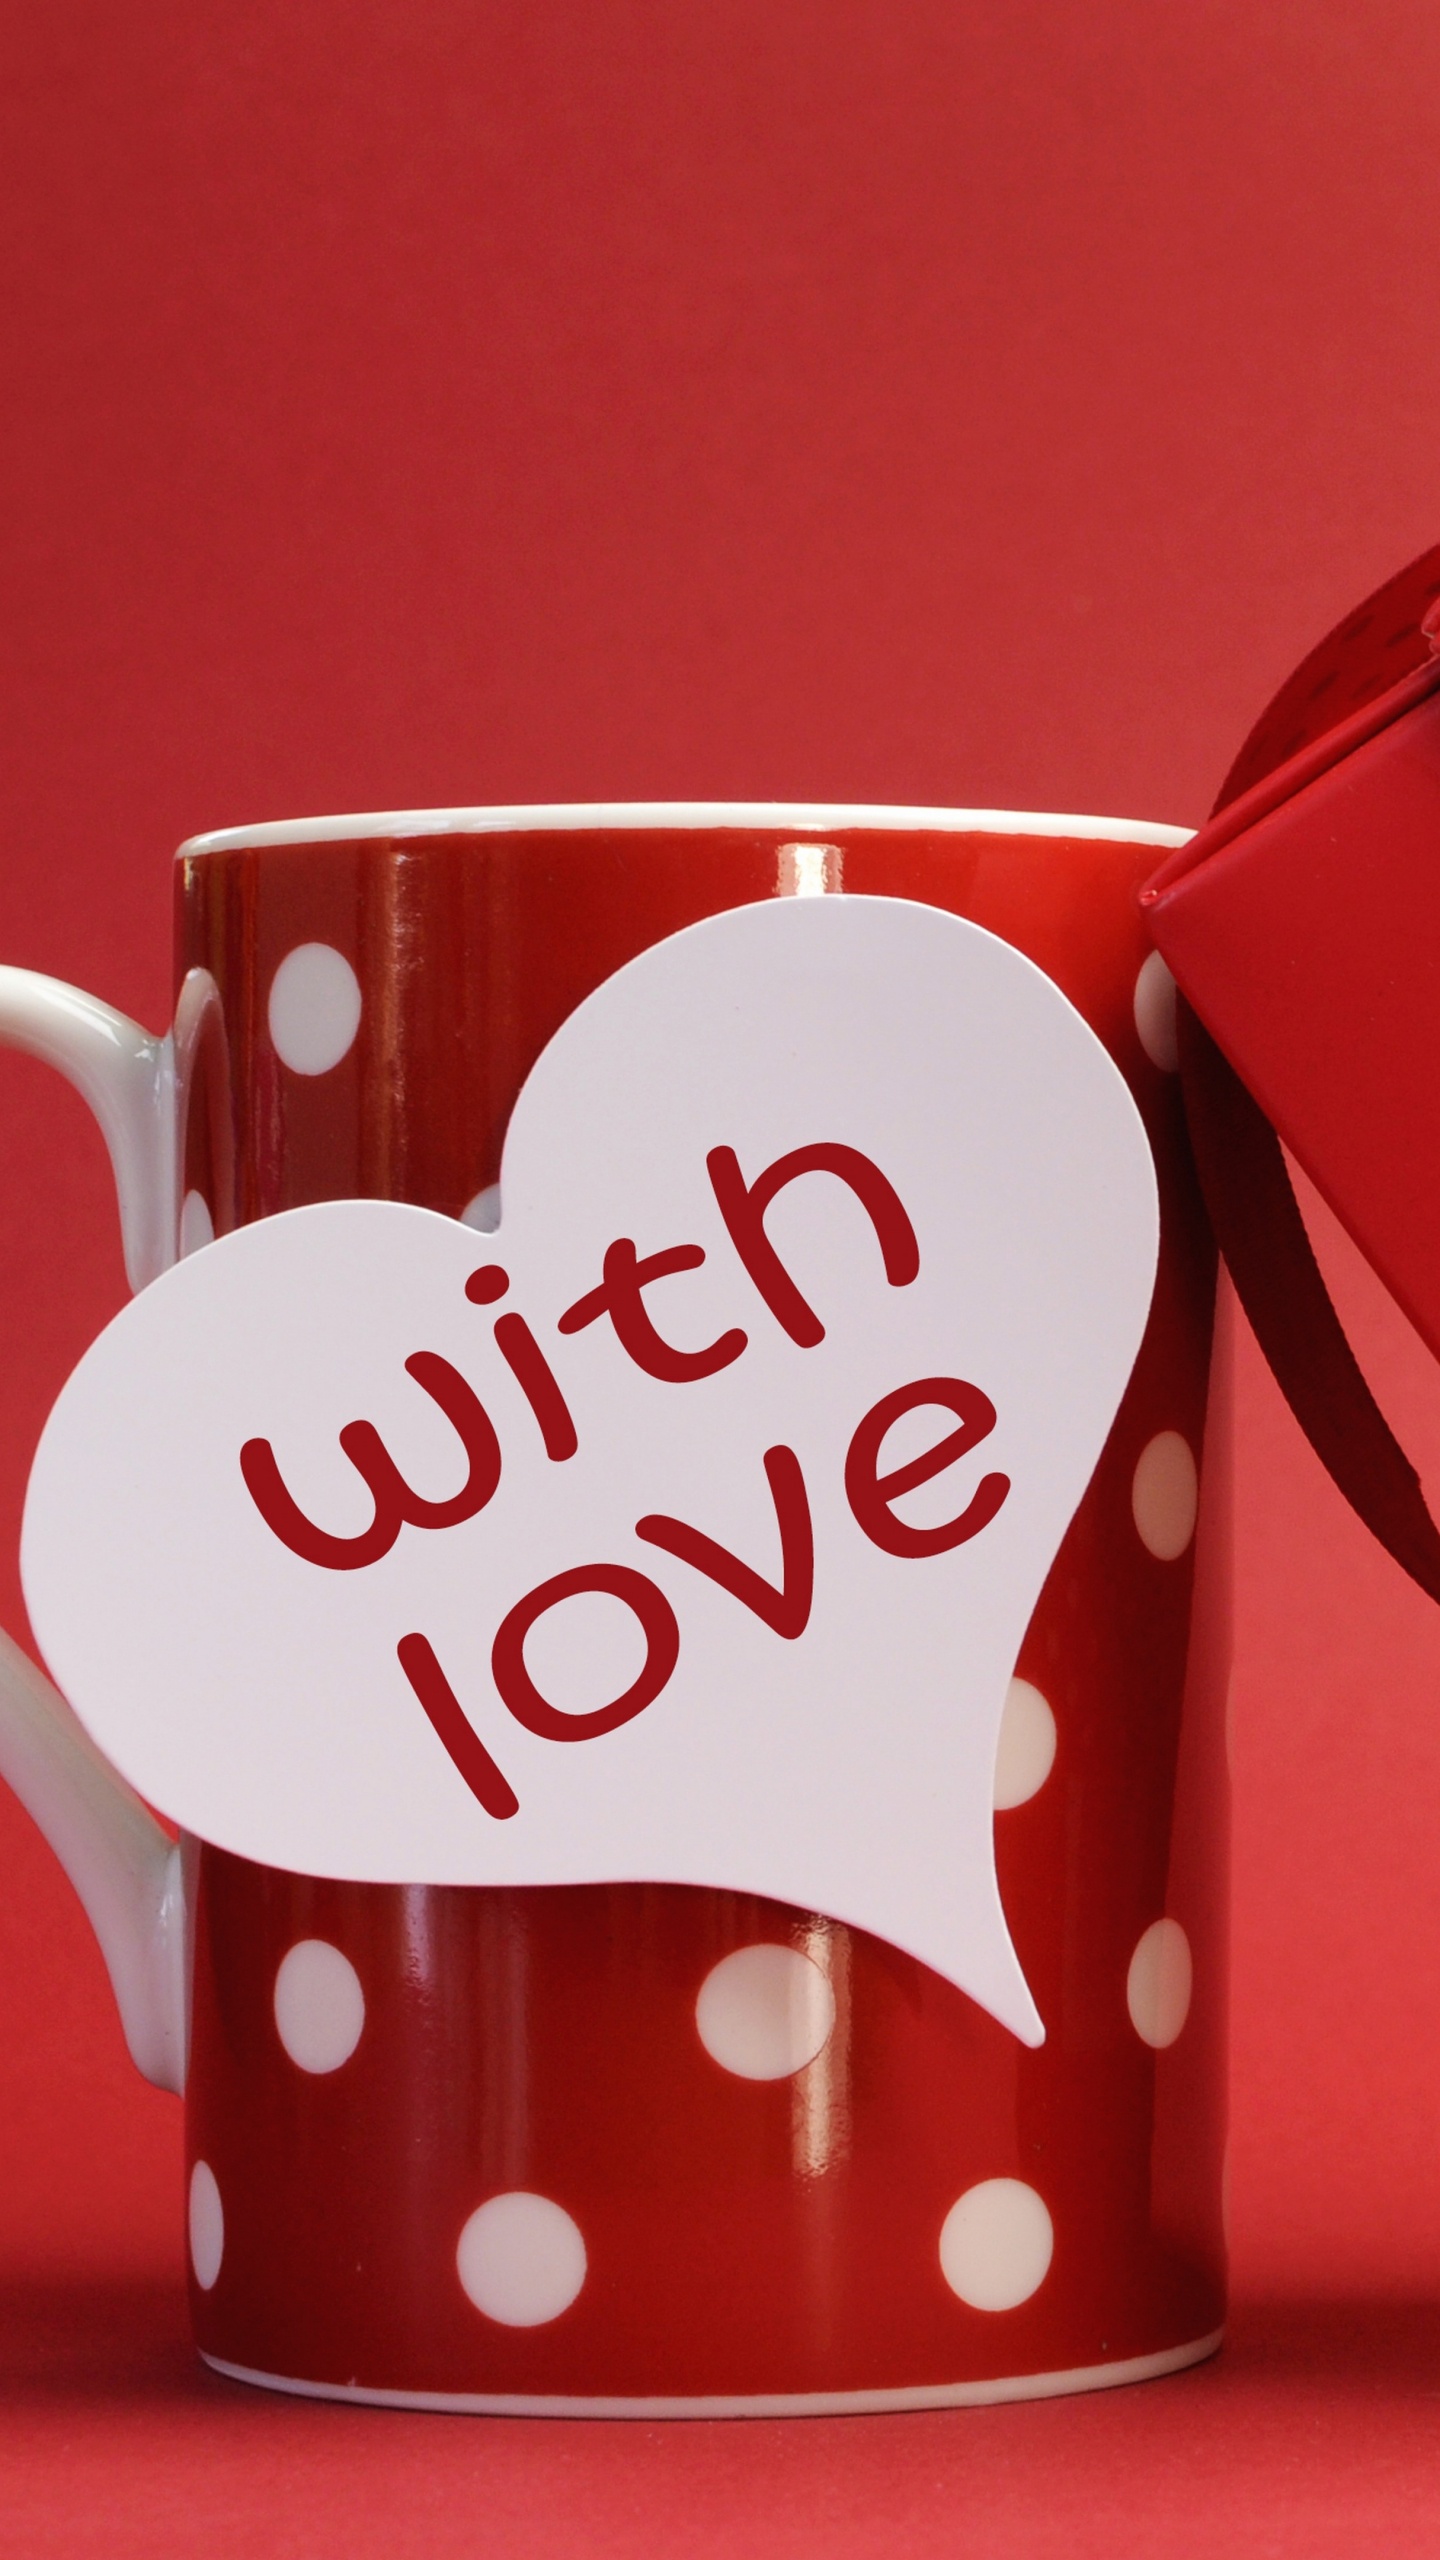 浪漫, 心脏, 爱情, 咖啡杯, 假日 壁纸 1440x2560 允许